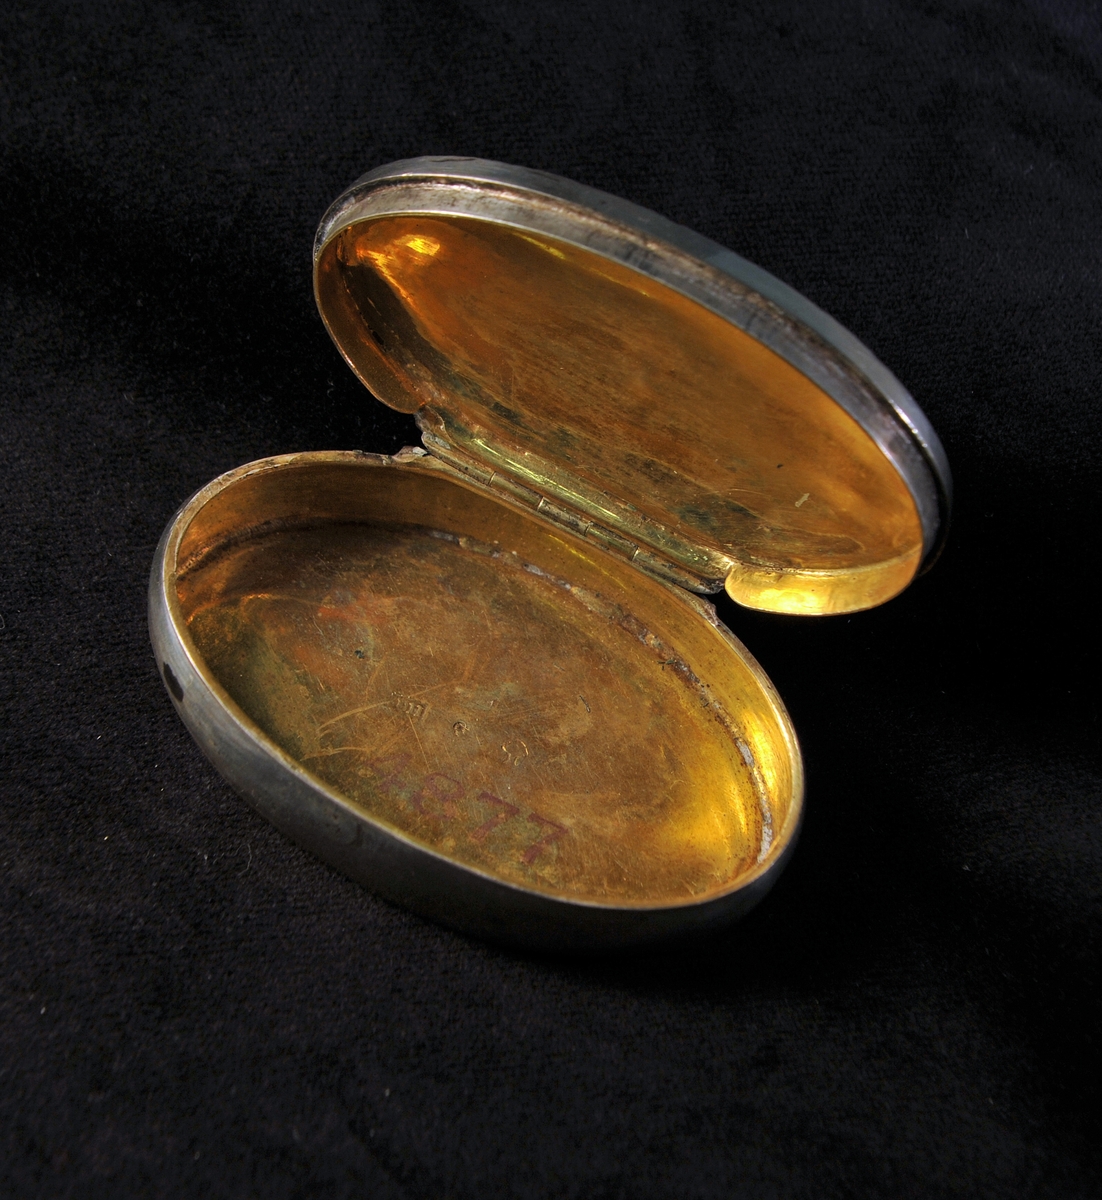 Oval, något buktande dosa av silver. Locket dekorerat med filigranarbete och 7 infattade stenar av rött glas. Invändigt förgylld. Stämplad invändigt i botten.